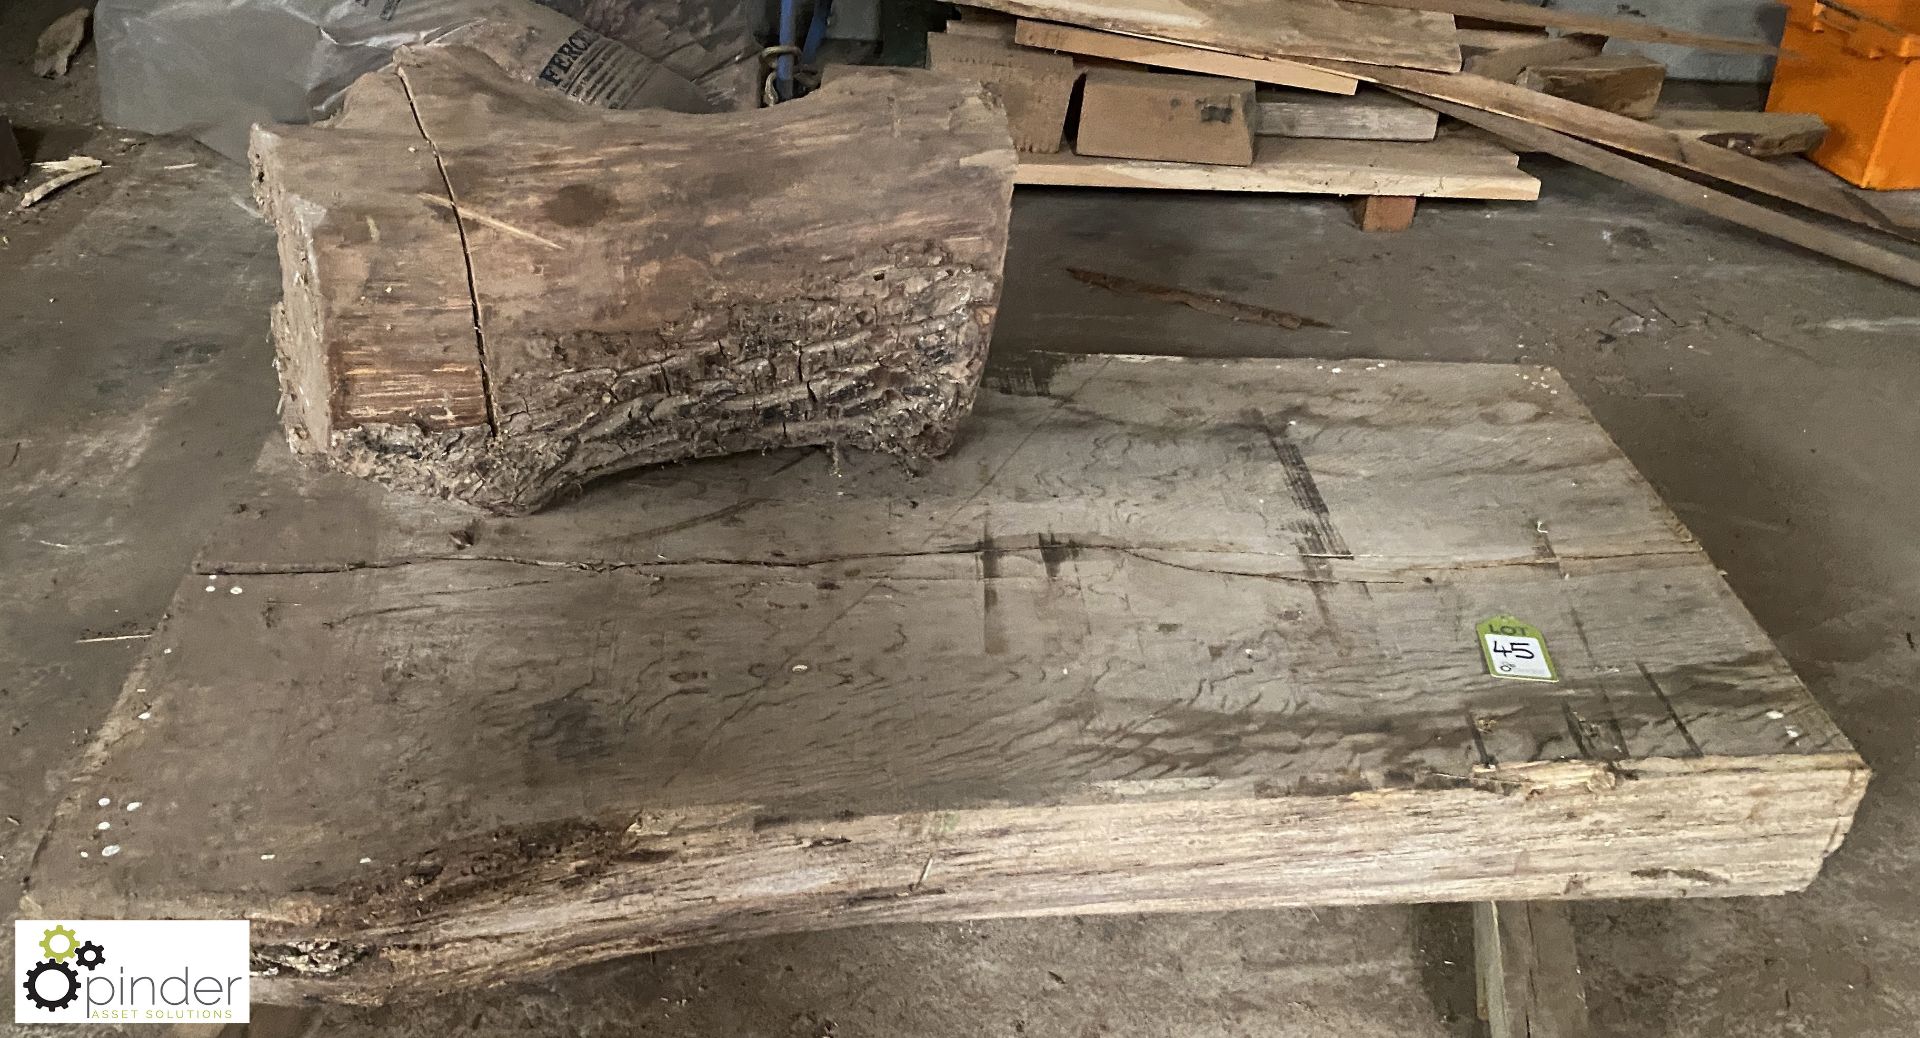 Air dried Oak Board, 1670mm x 1050mm x 220mm and air dried Oak Stump, 850mm x 450mm diameter - Image 2 of 5